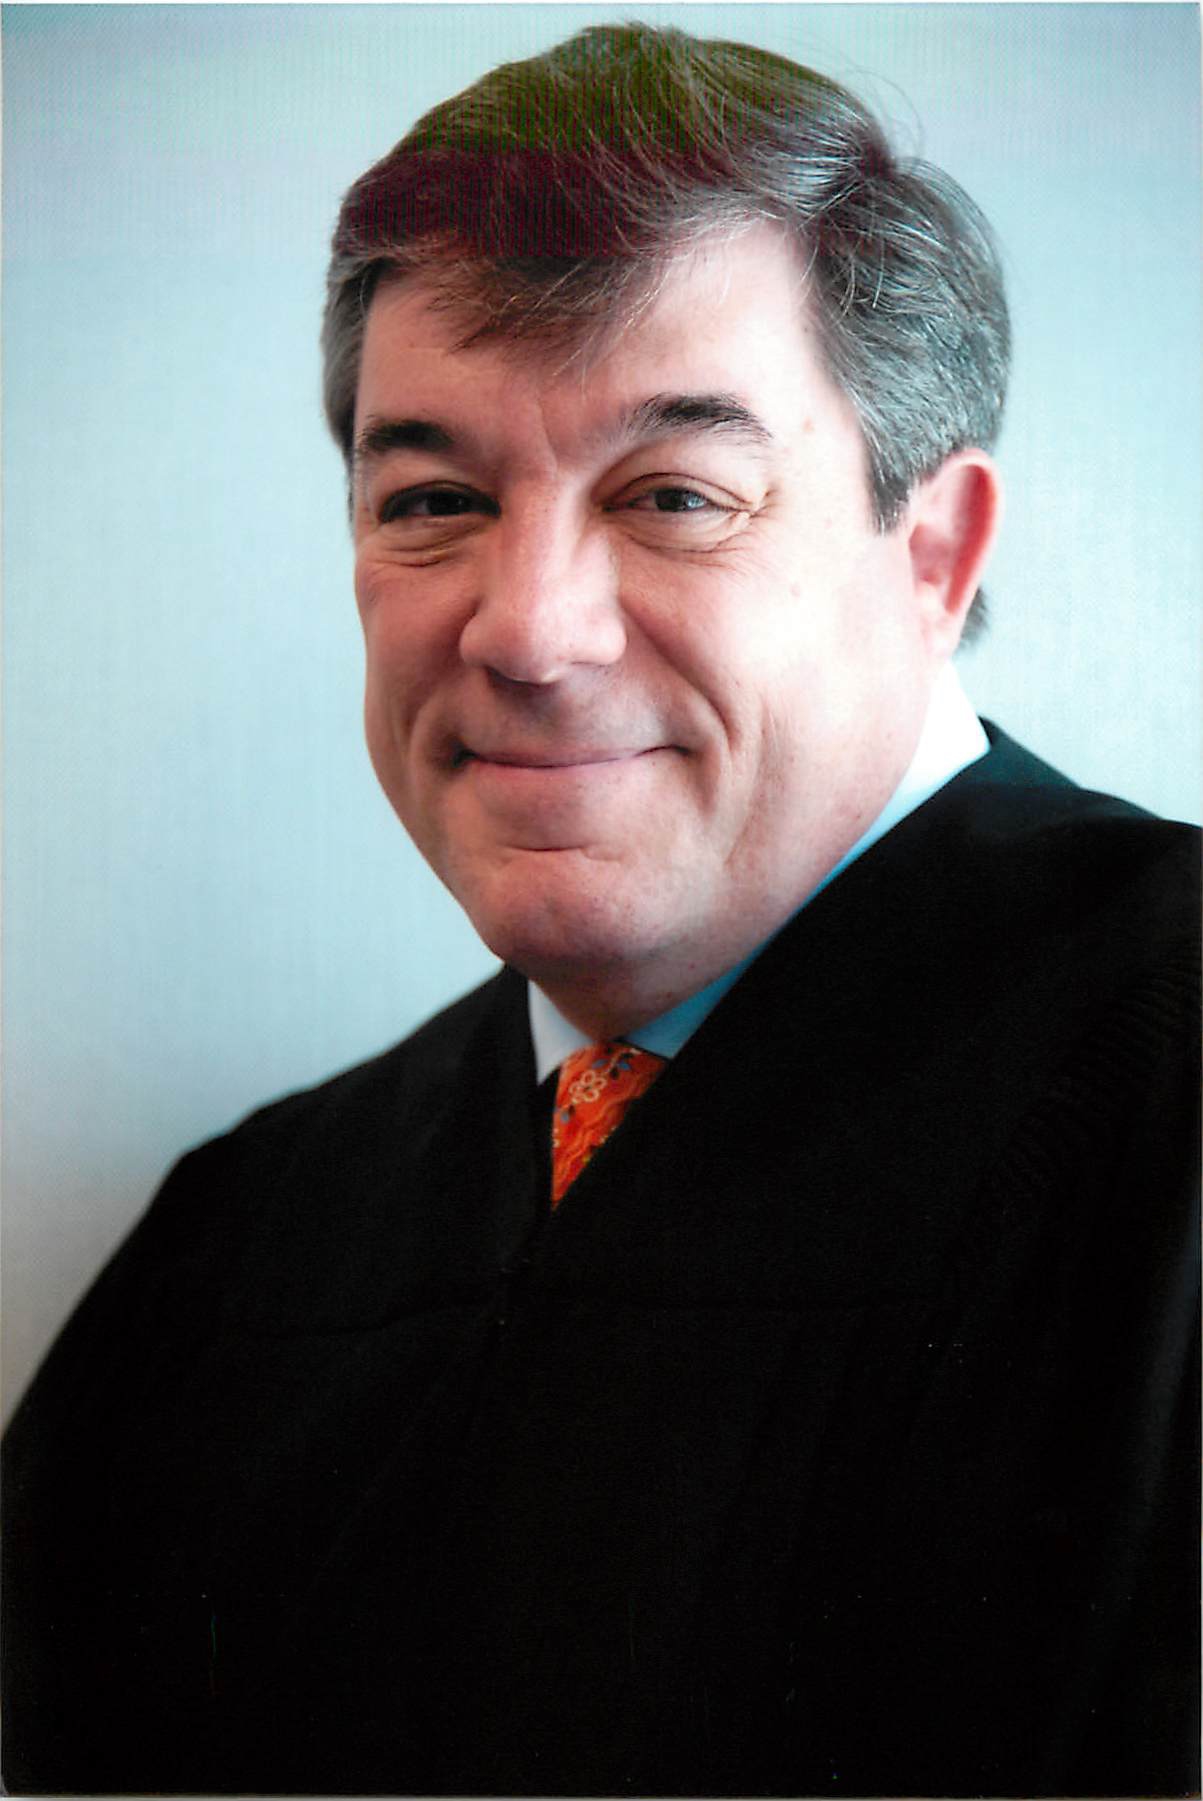 Judge Adalberto Jordan